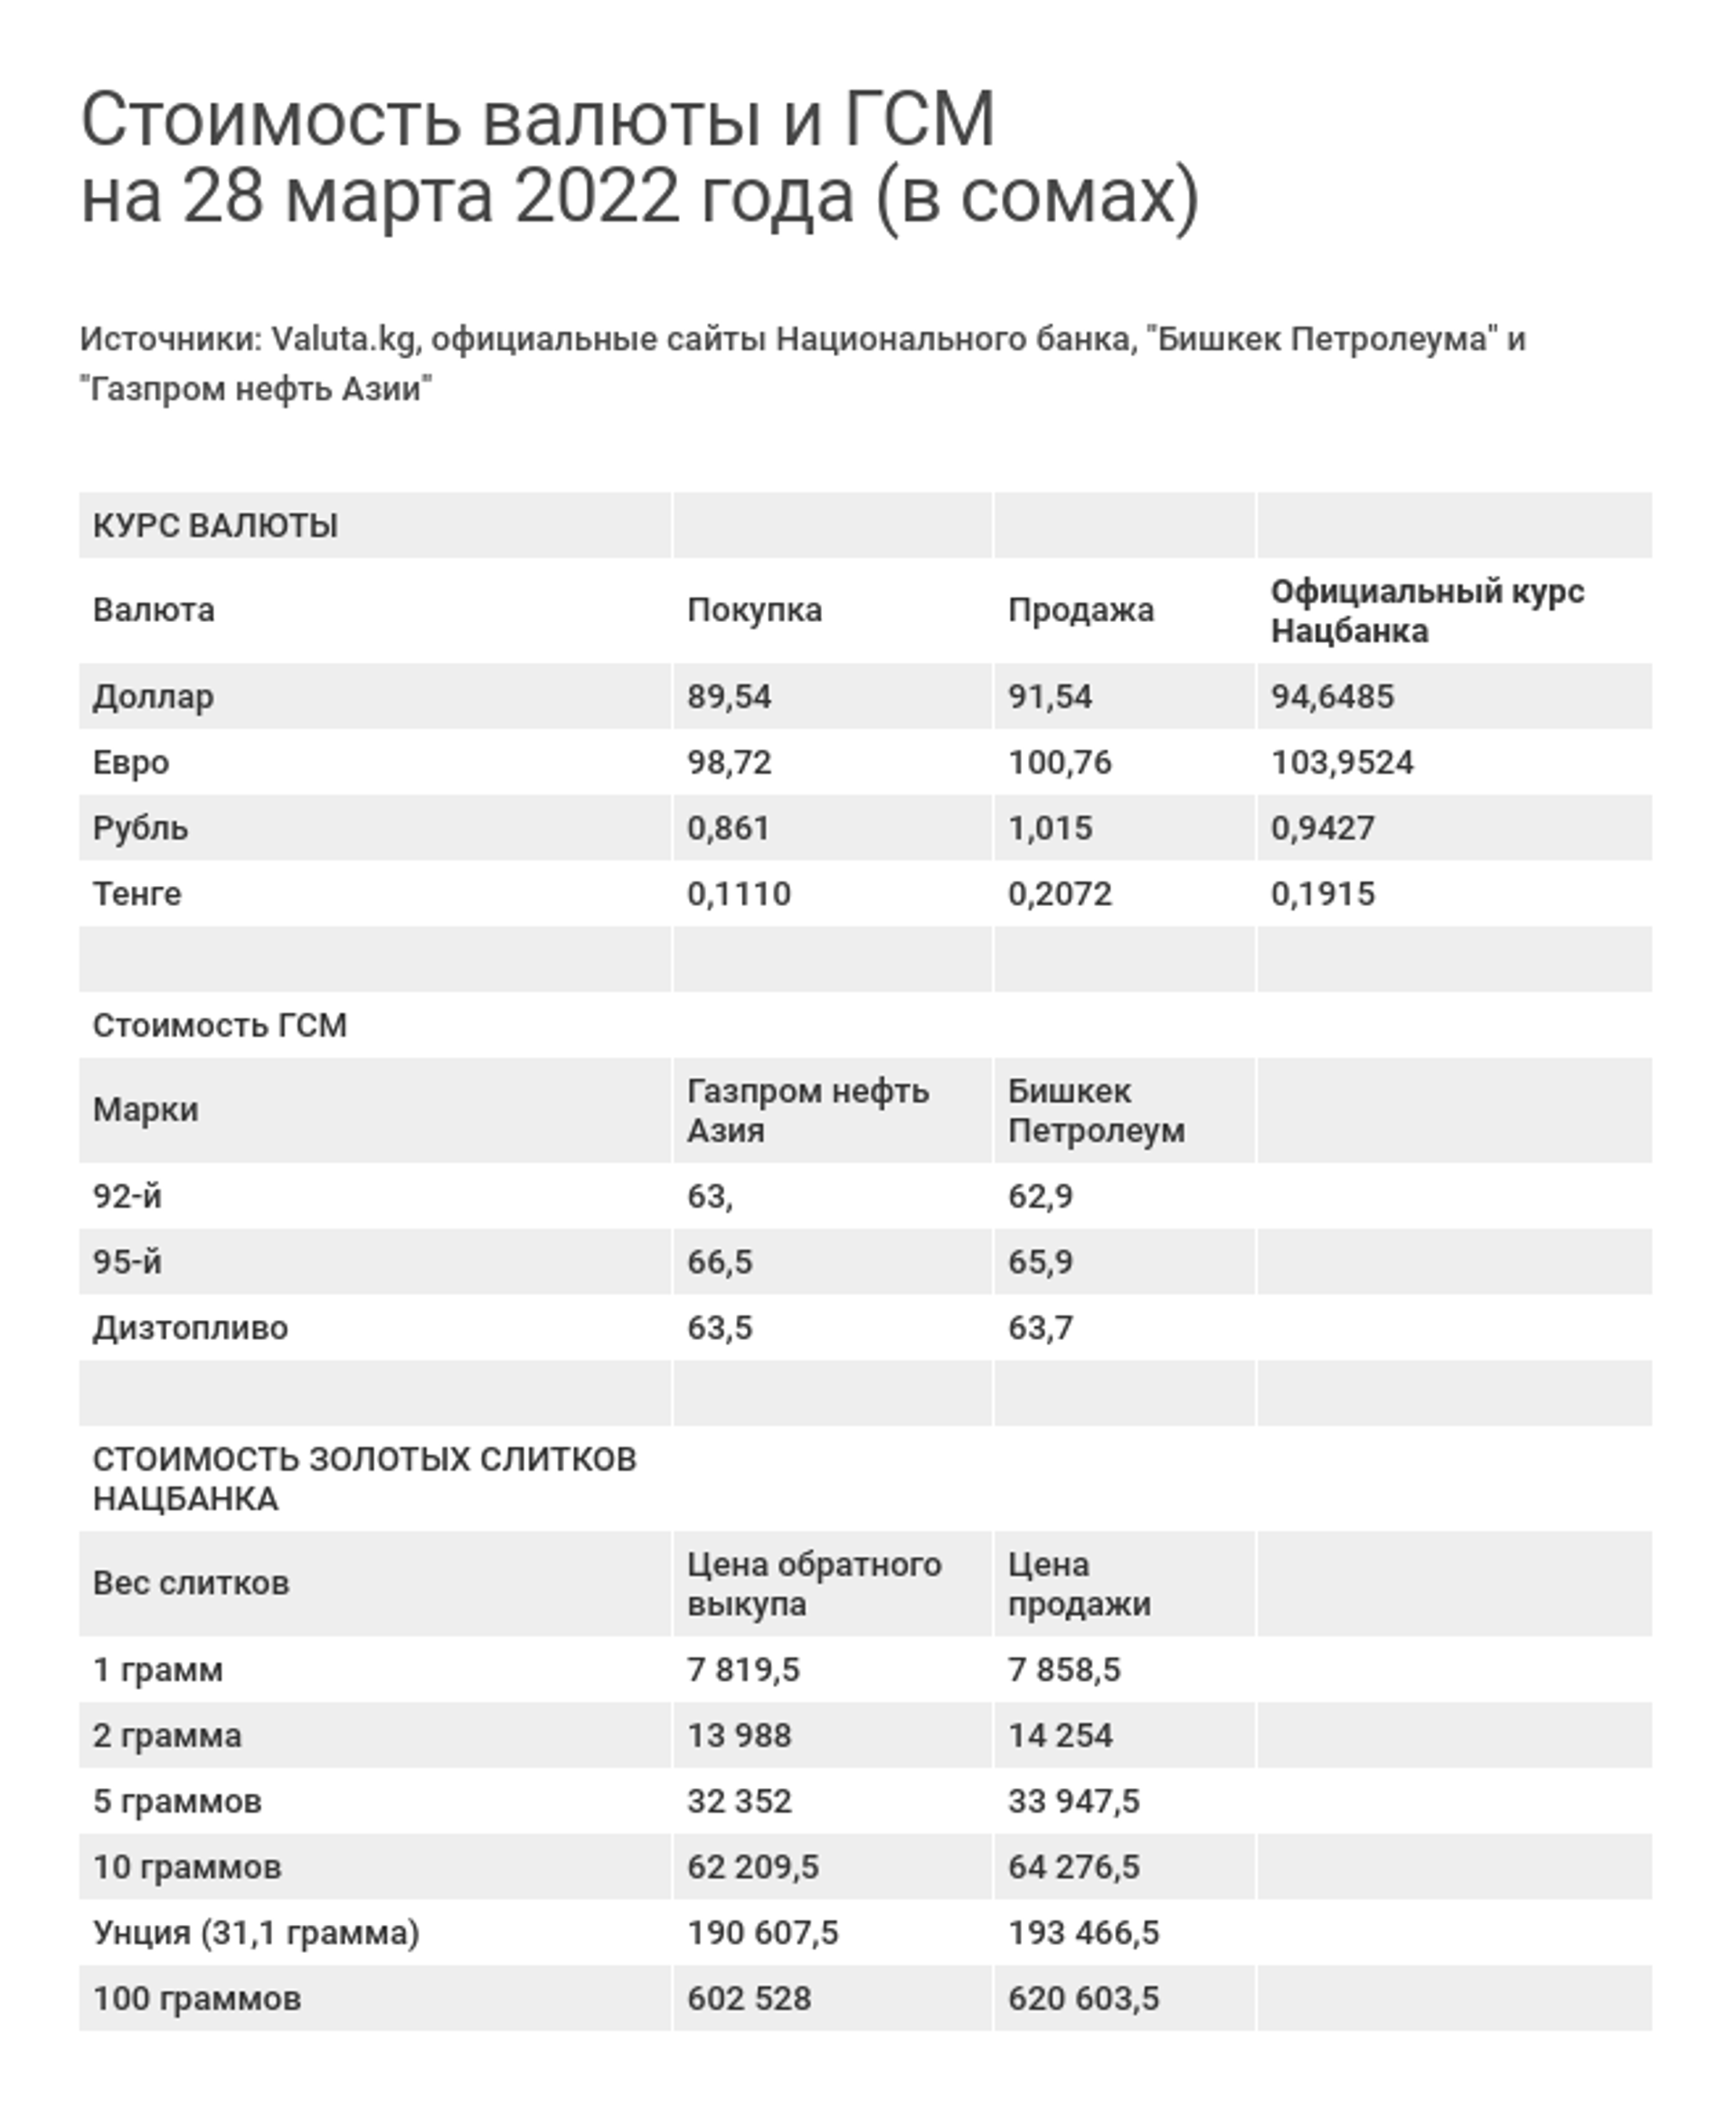 Стоимость валюты и ГСМ на 28 марта 2022 года (в сомах) - Sputnik Кыргызстан, 1920, 28.03.2022